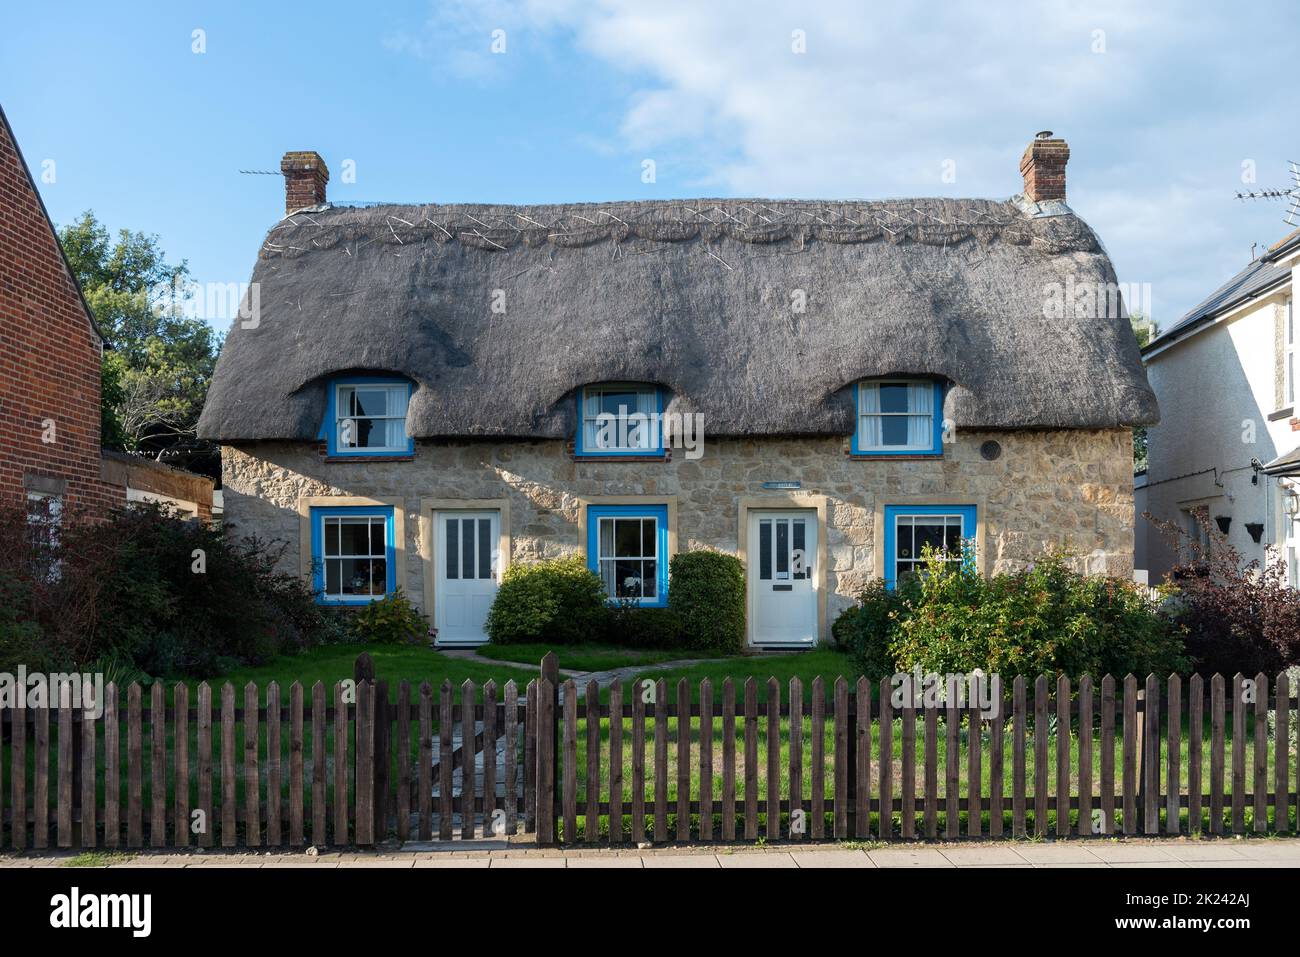 Maisons traditionnelles de style ancien avec toit de chaume sur l'île de Wight, en Angleterre. Banque D'Images